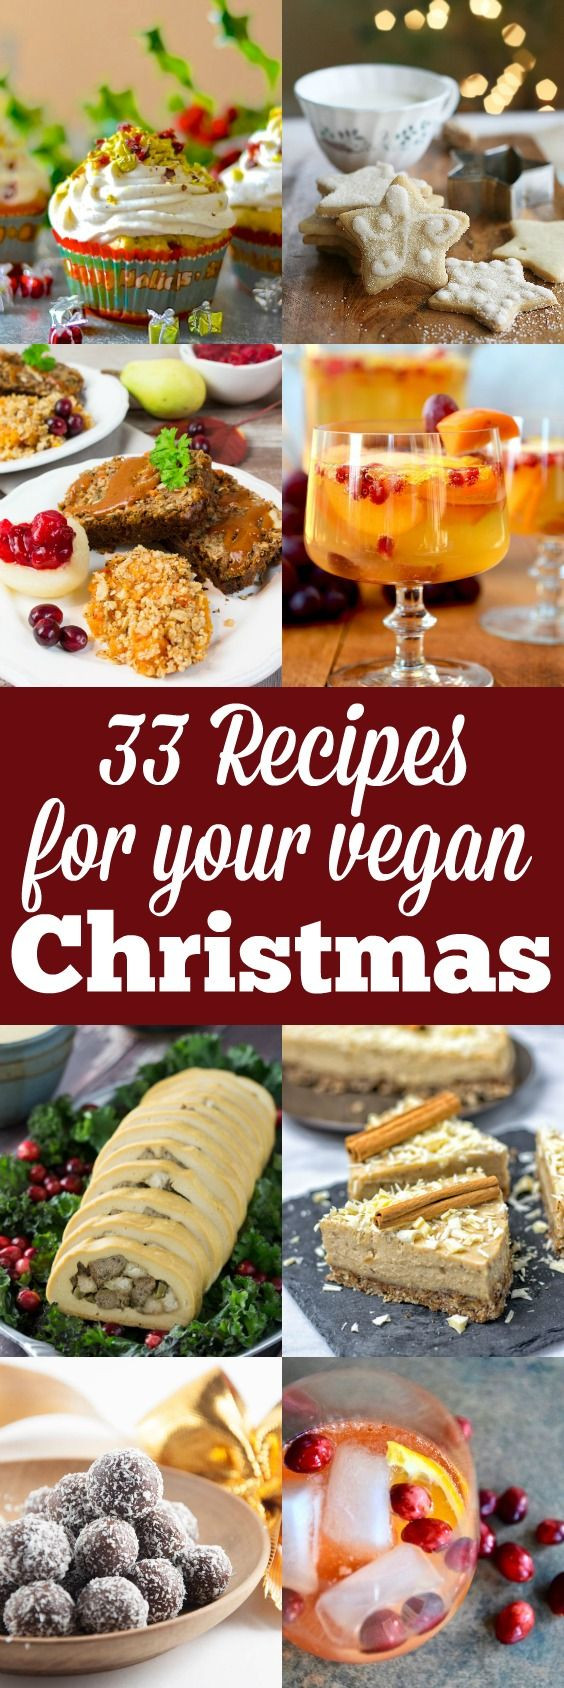 Vegan Recipes For Christmas
 Best 25 Vegan christmas ideas on Pinterest